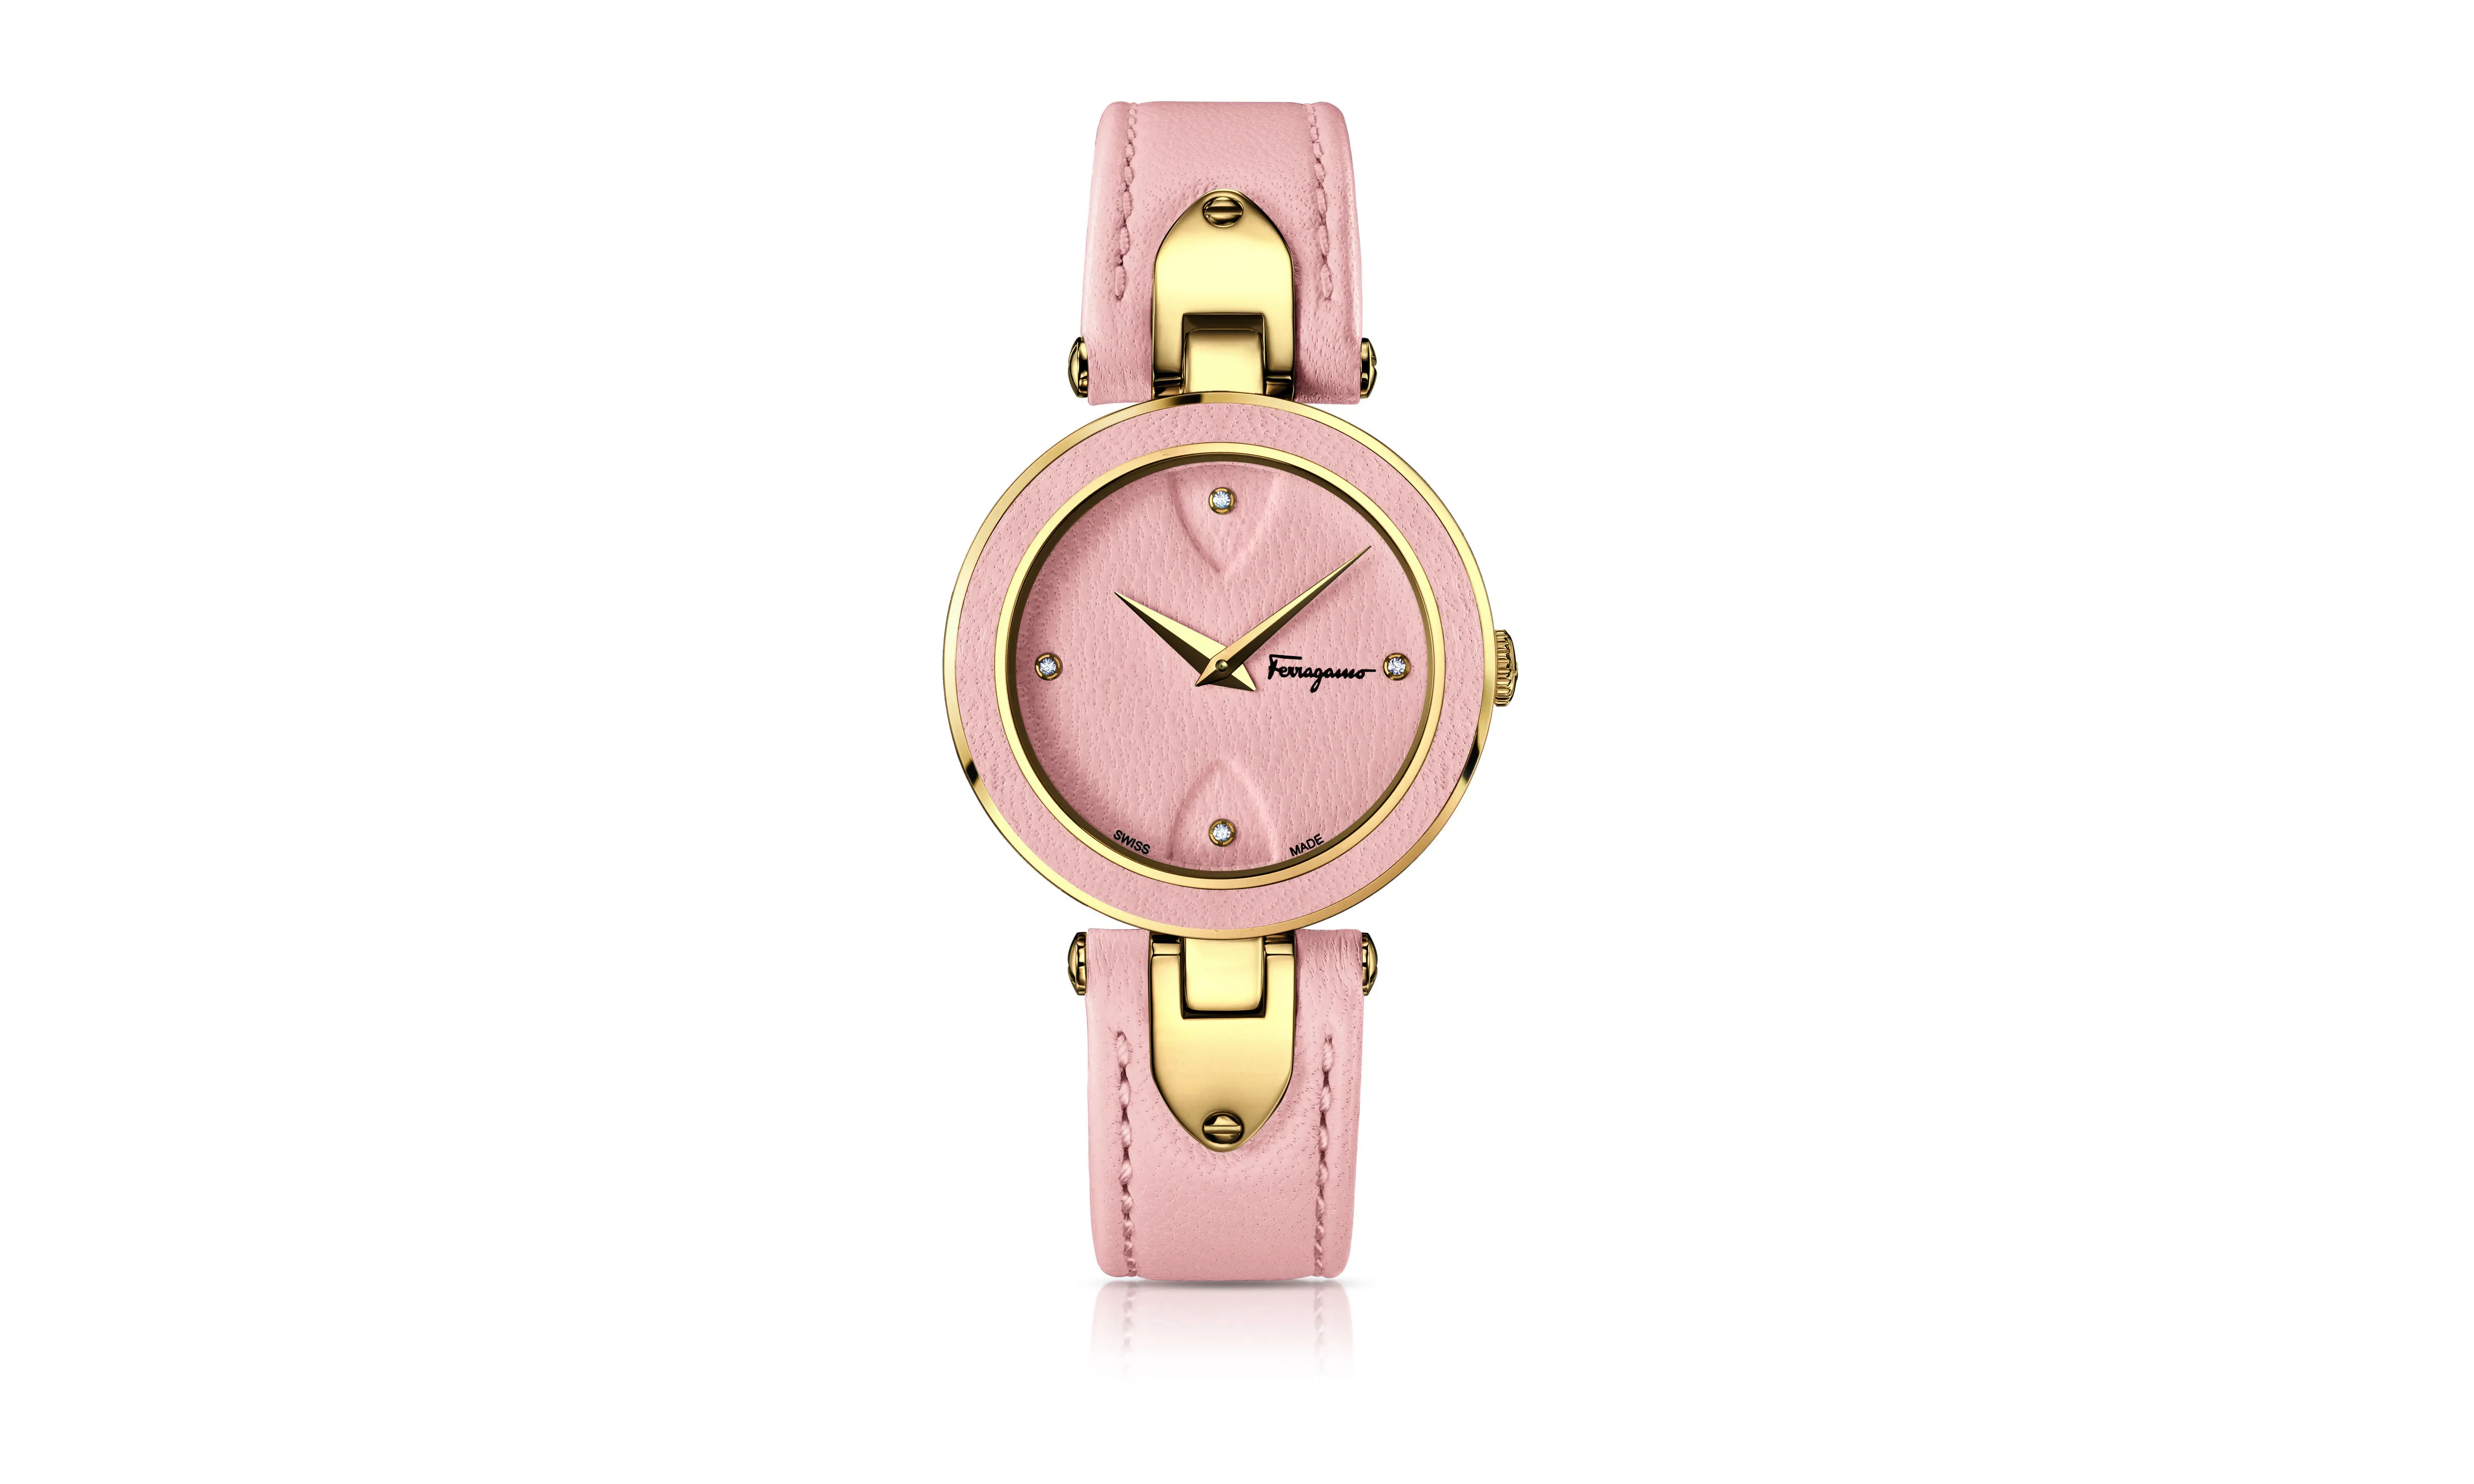 Salvatore Ferragamo baru saja melansir jam tangan terbarunya dengan desain elegan untuk menunjang tampilan Anda. 